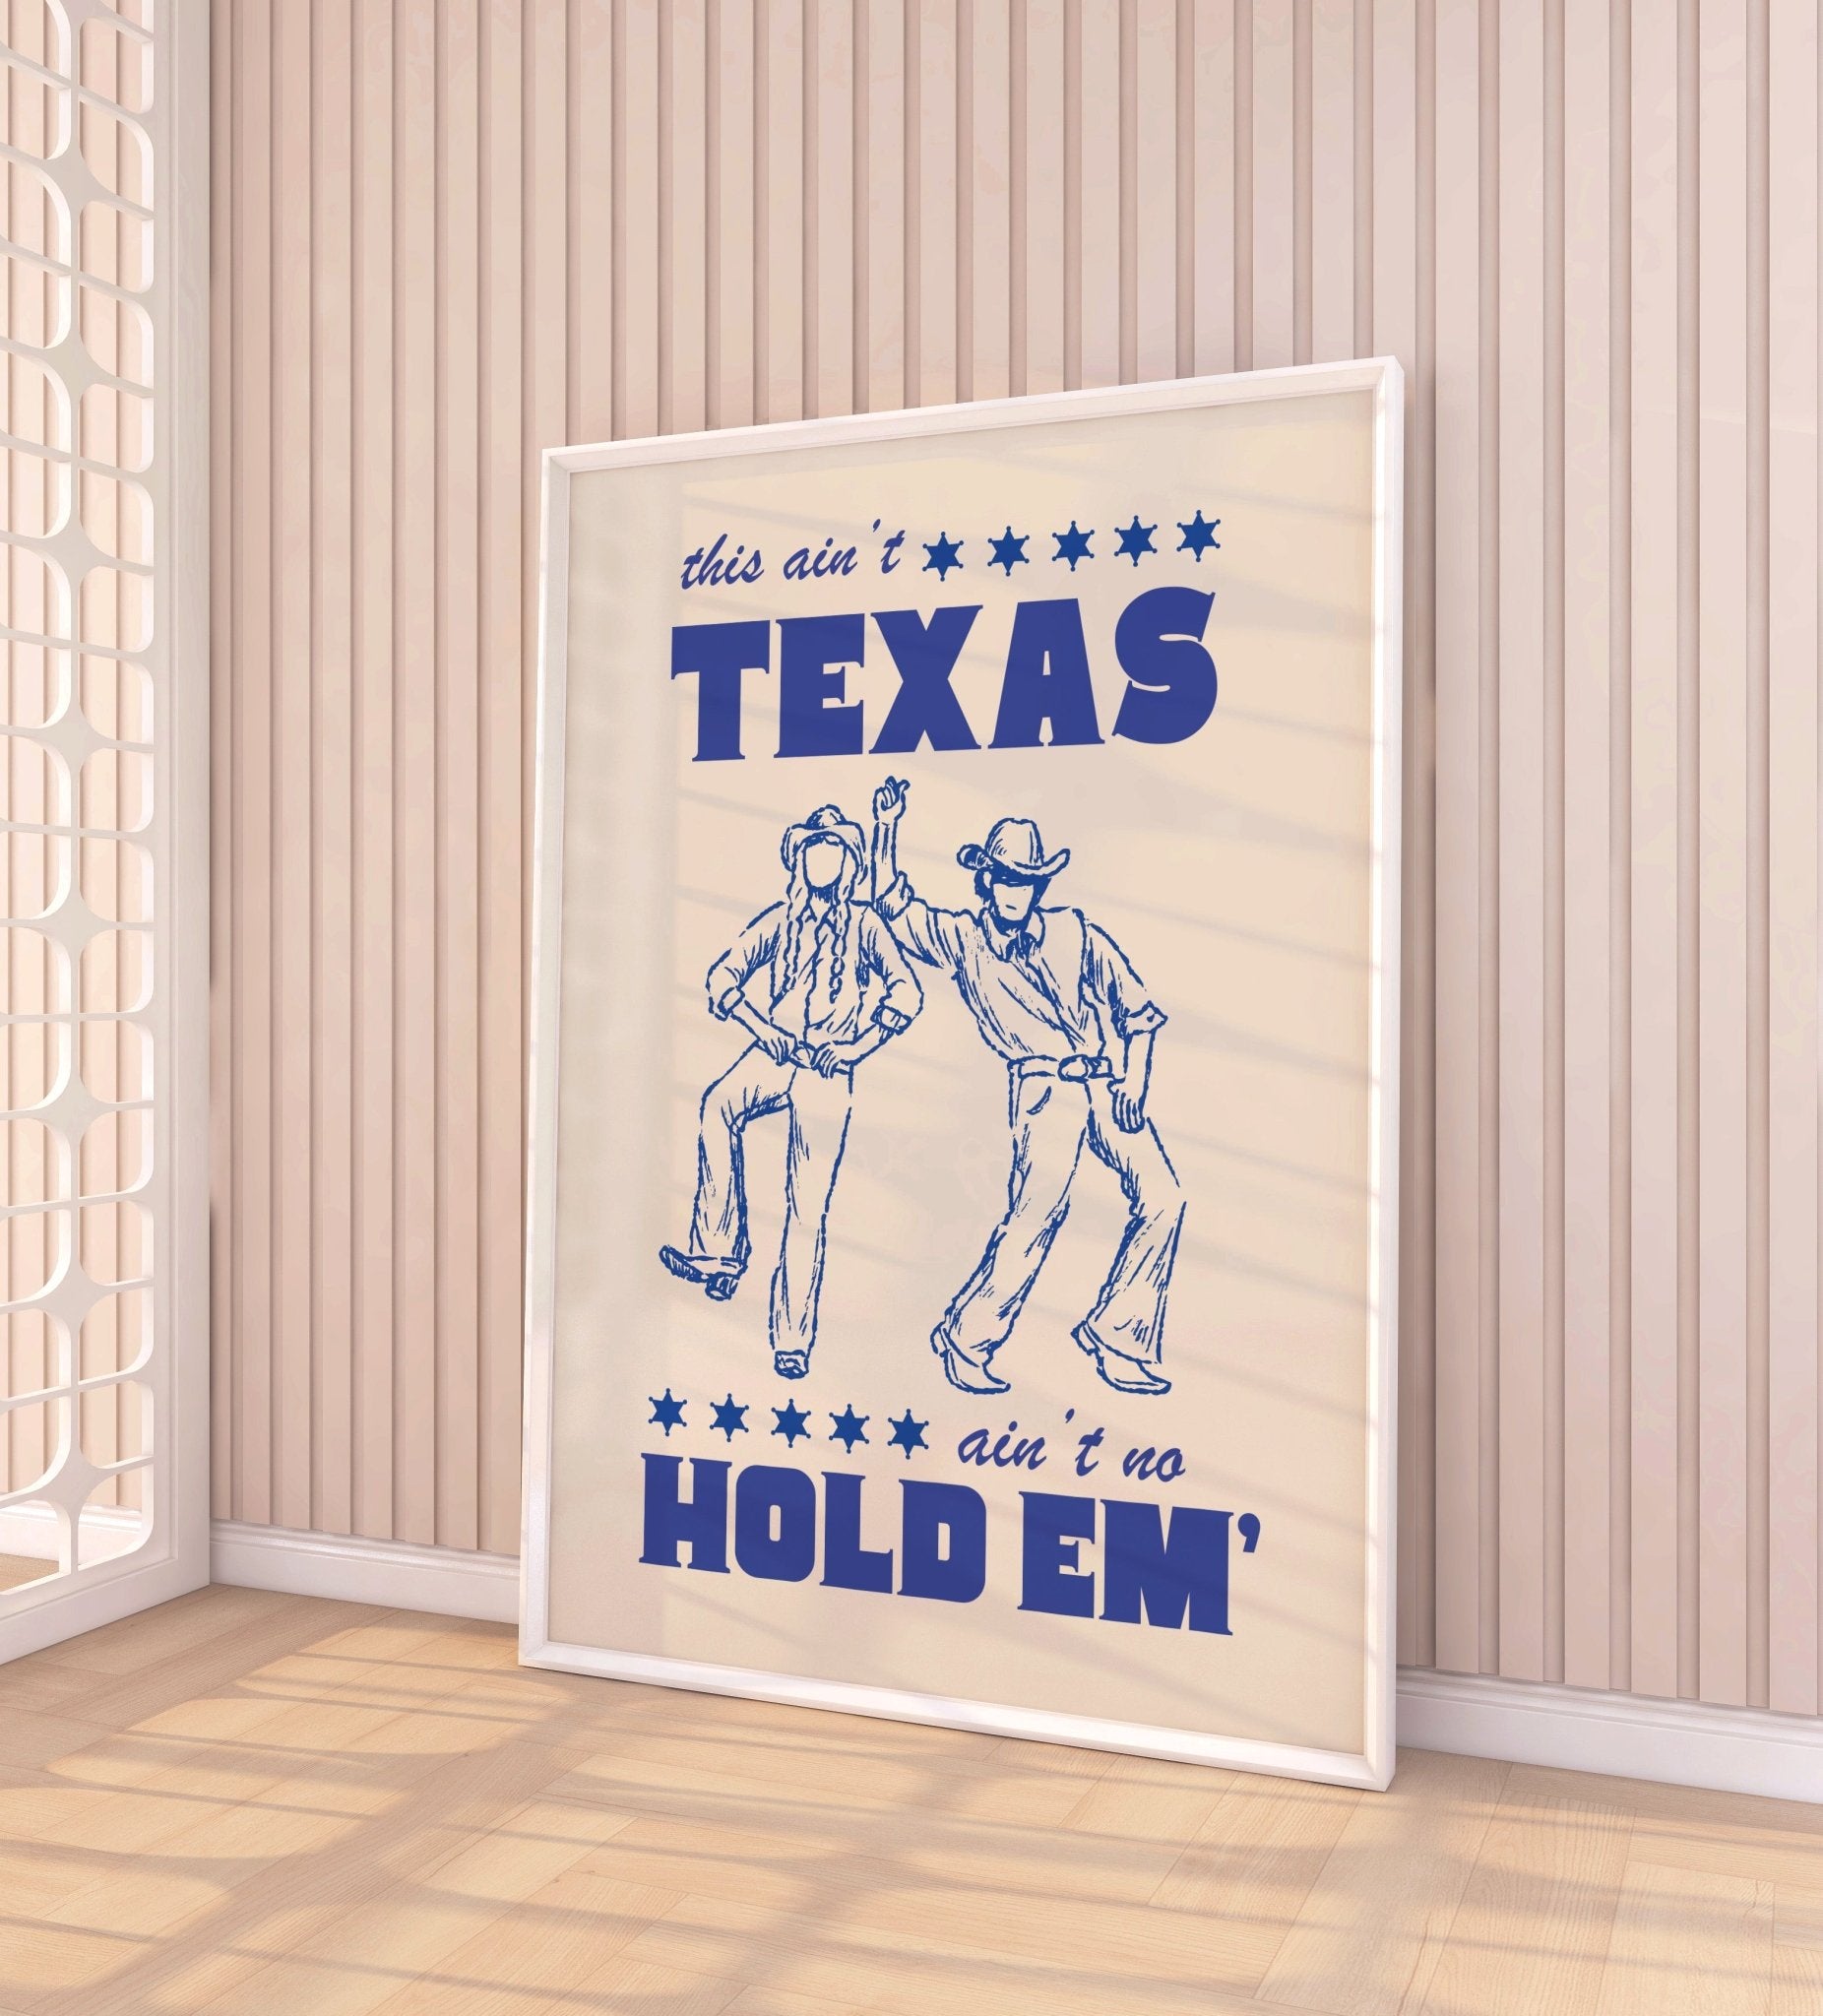 Texas Hold Em' Print